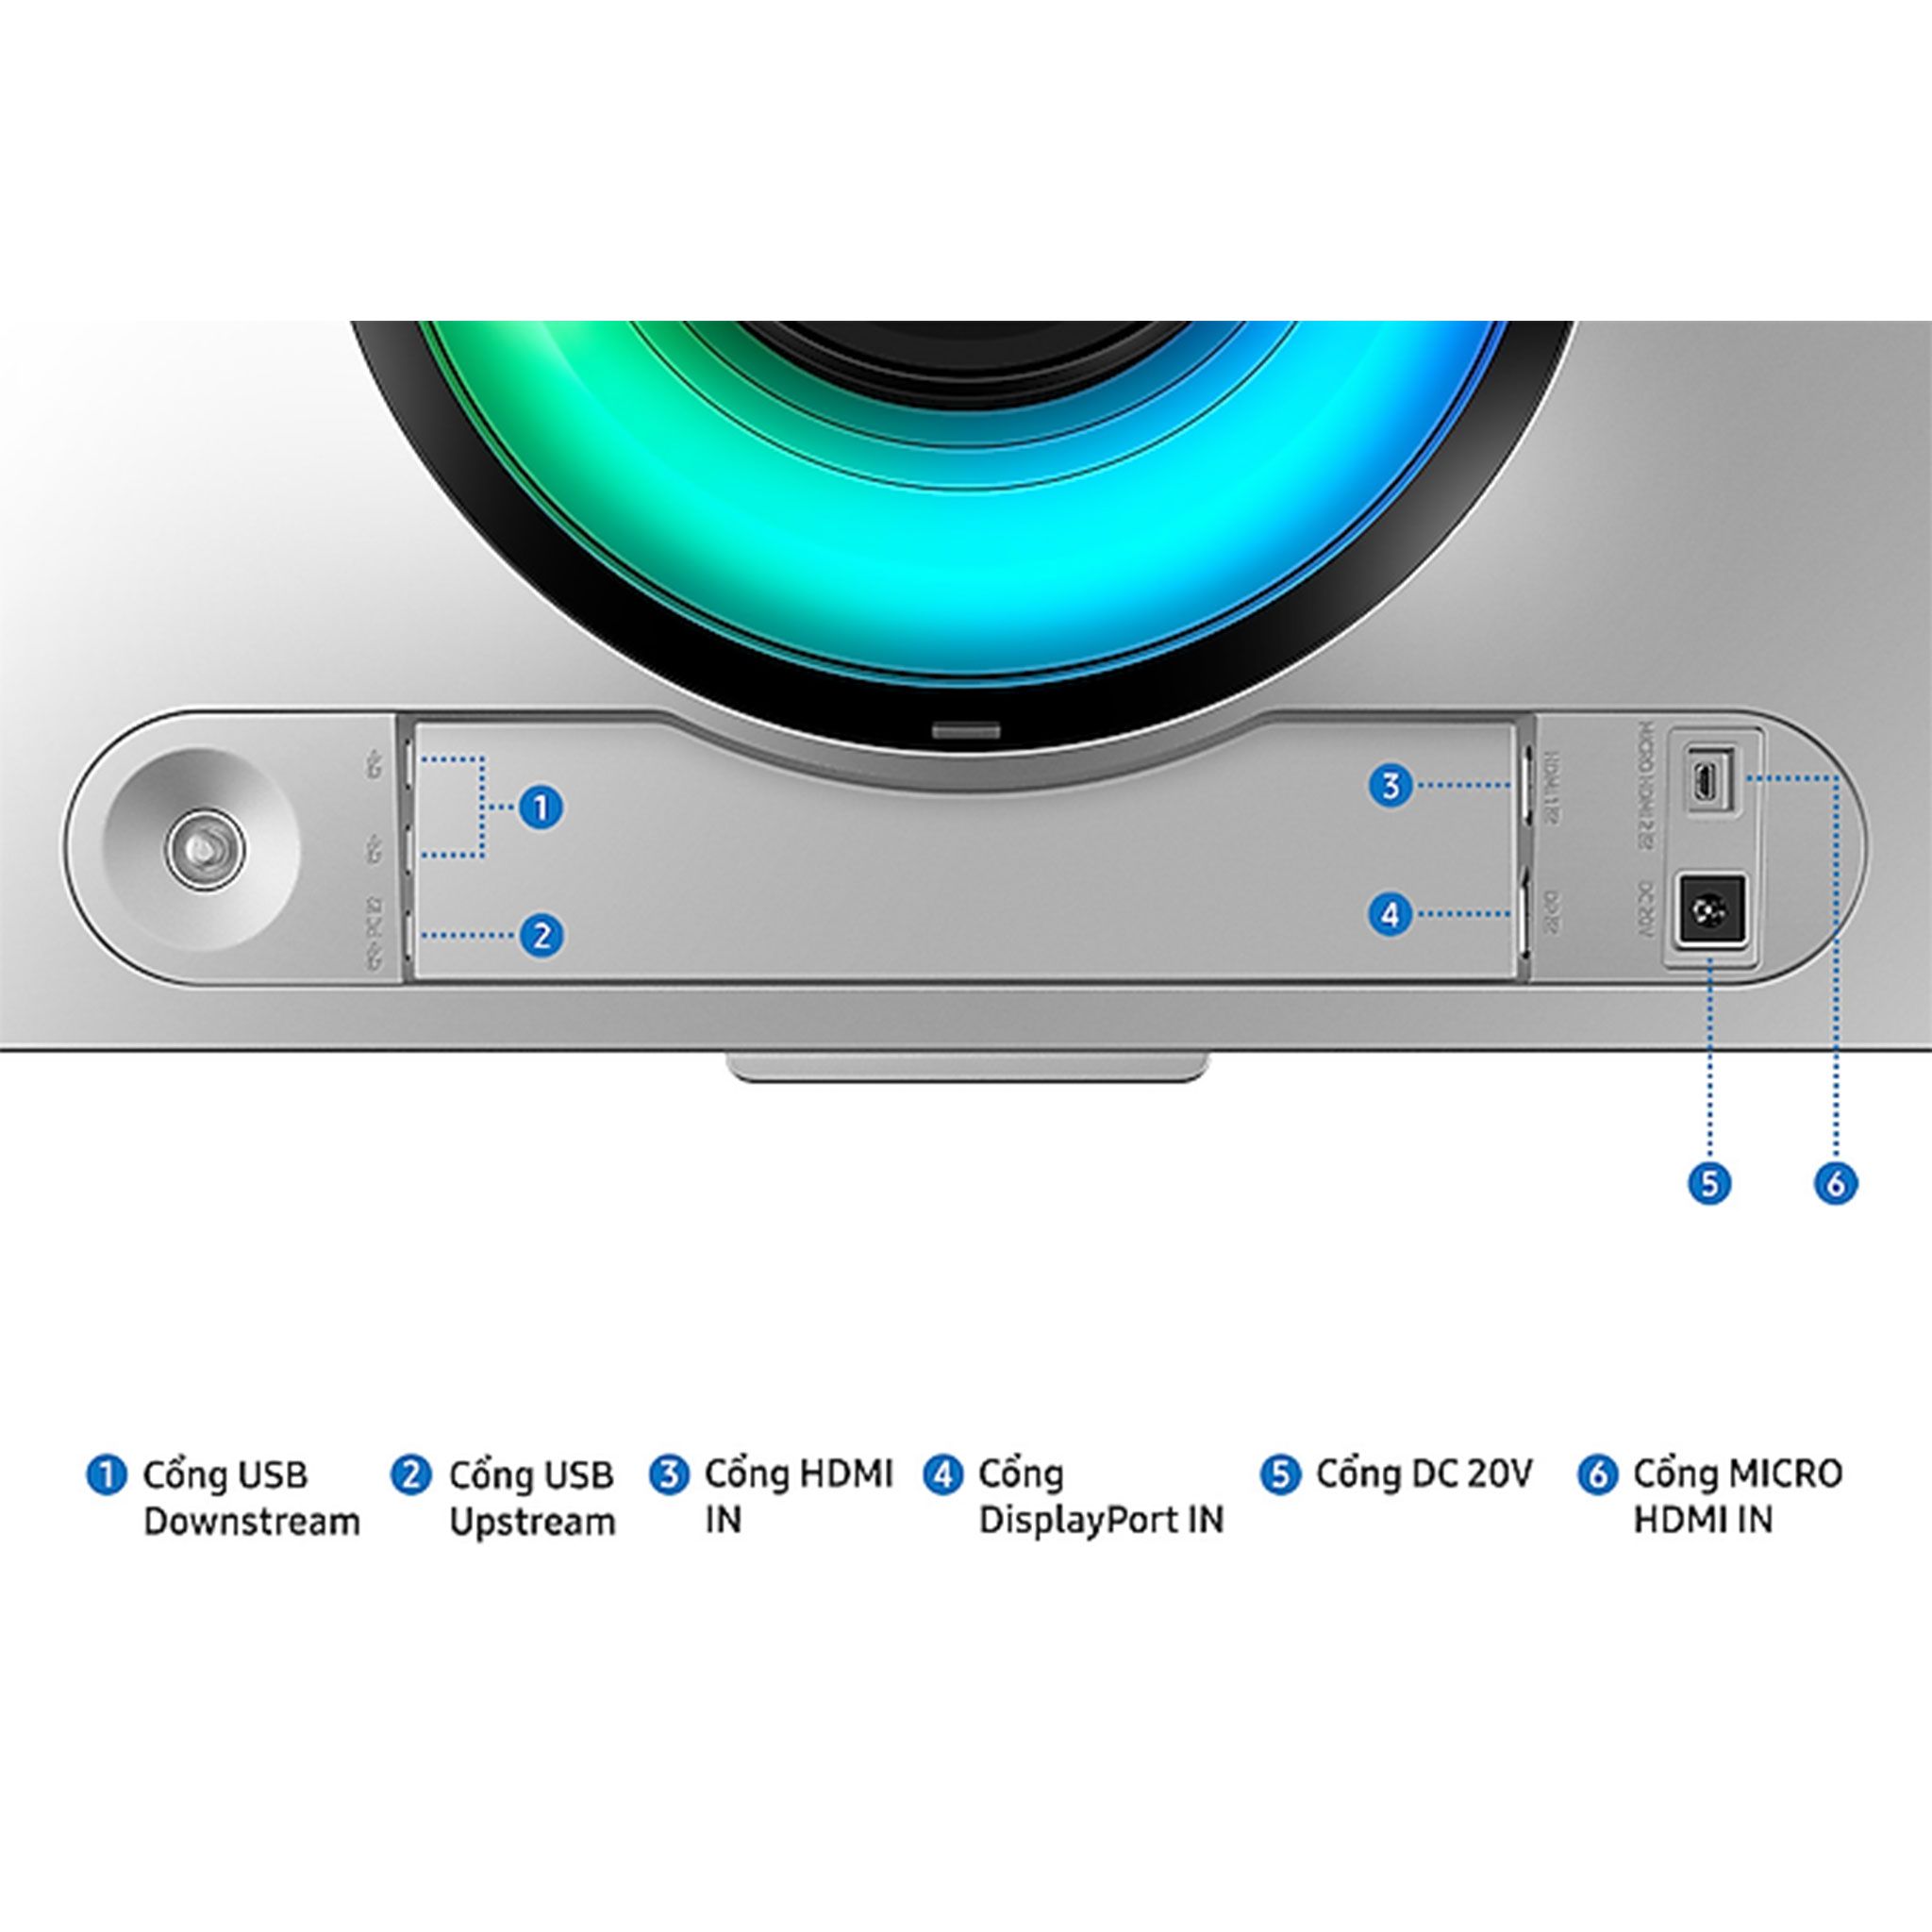 Màn hình Samsung Odyssey OLED G9 G95SC DQHD 240Hz | 49 inch, DQHD, OLED, 240Hz, 0,03ms, cong